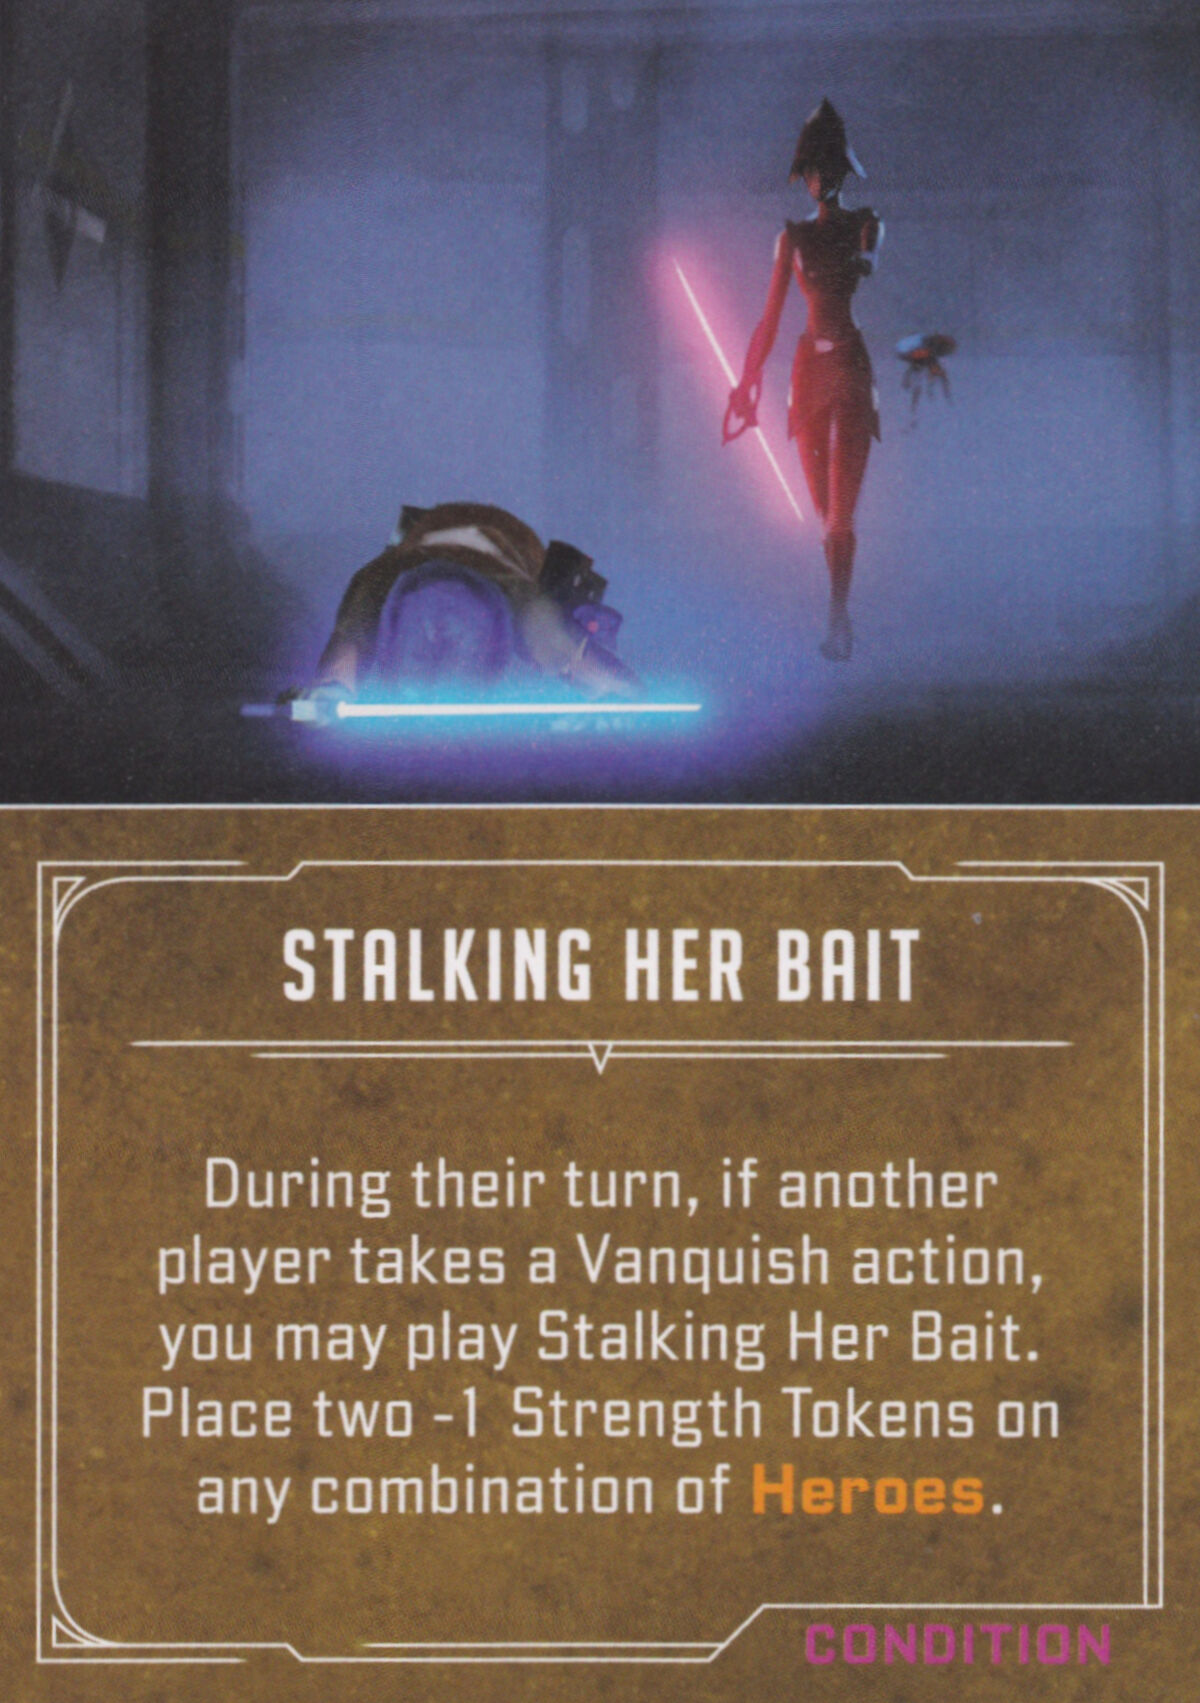 Stalking Her Bait, Star Wars Villainous Wiki